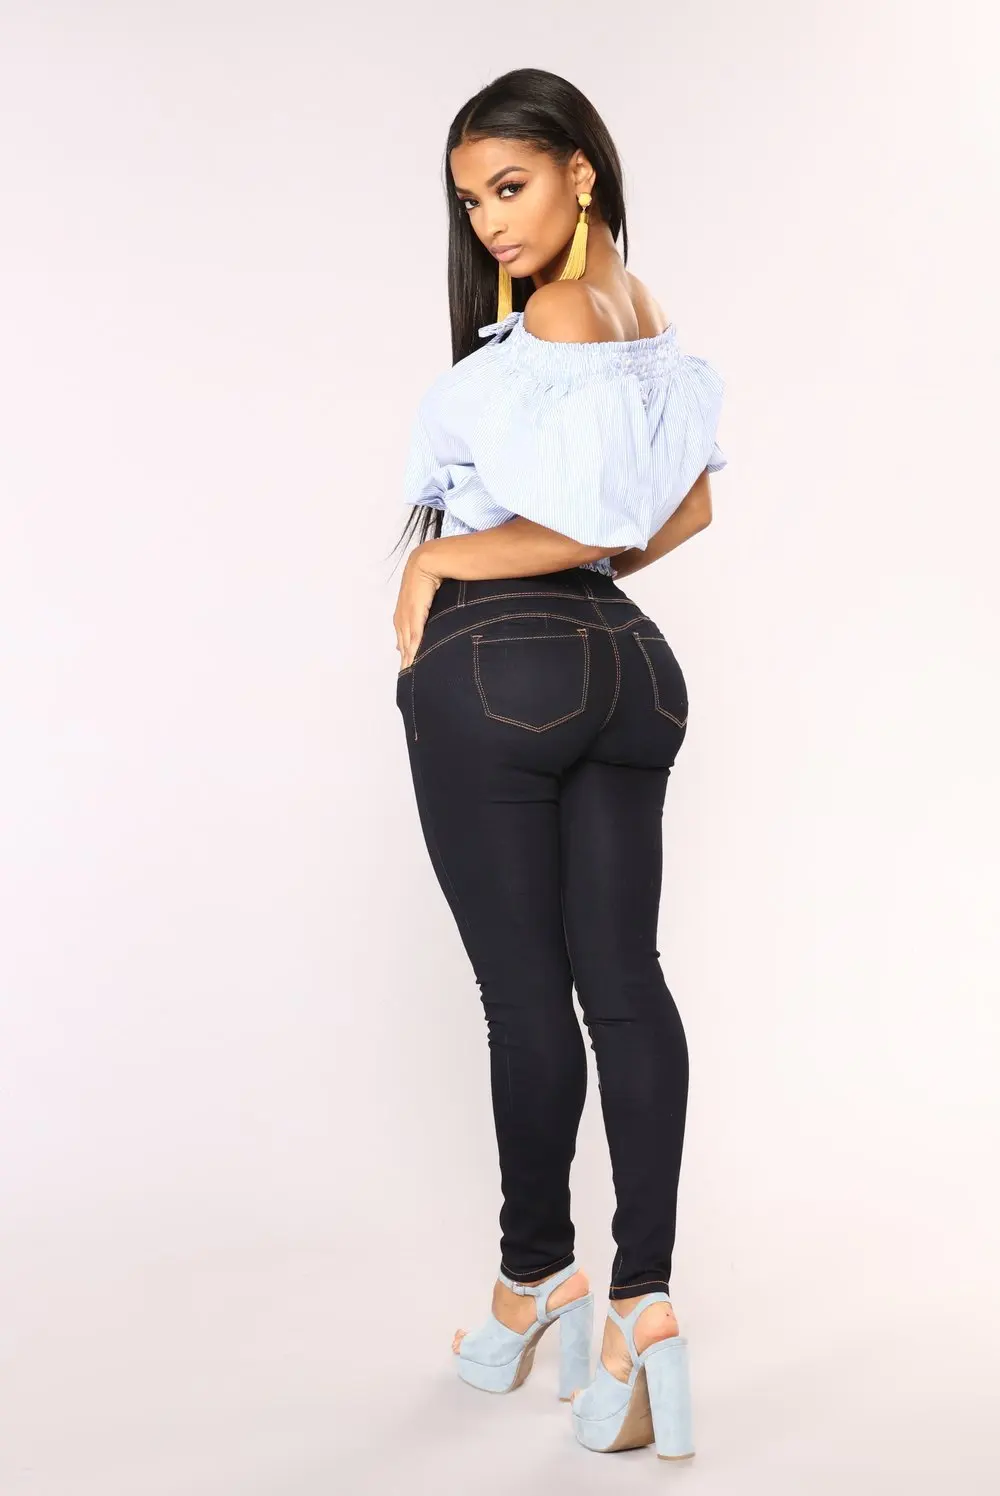 LIBERJOG женские узкие джинсы стрейч пуш-ап для бедер винтажные повседневные Большие размеры длинные узкие джинсовые брюки женские обтягивающие брюки